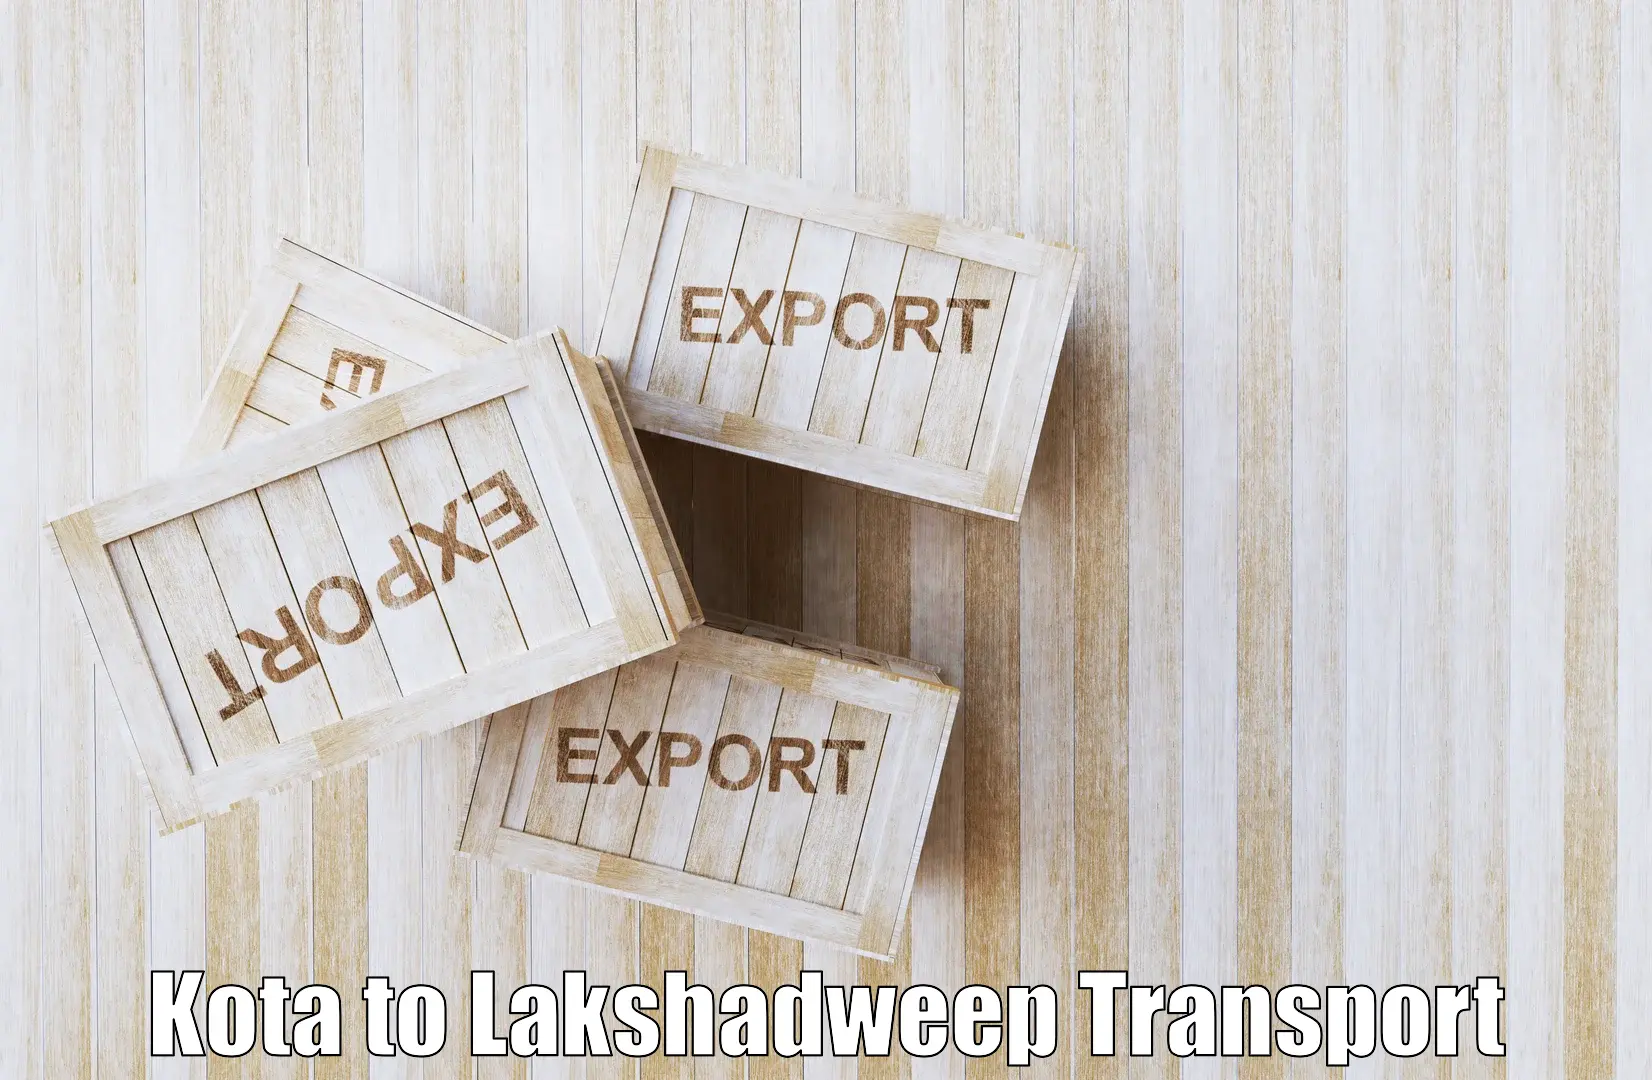 Vehicle transport services Kota to Lakshadweep